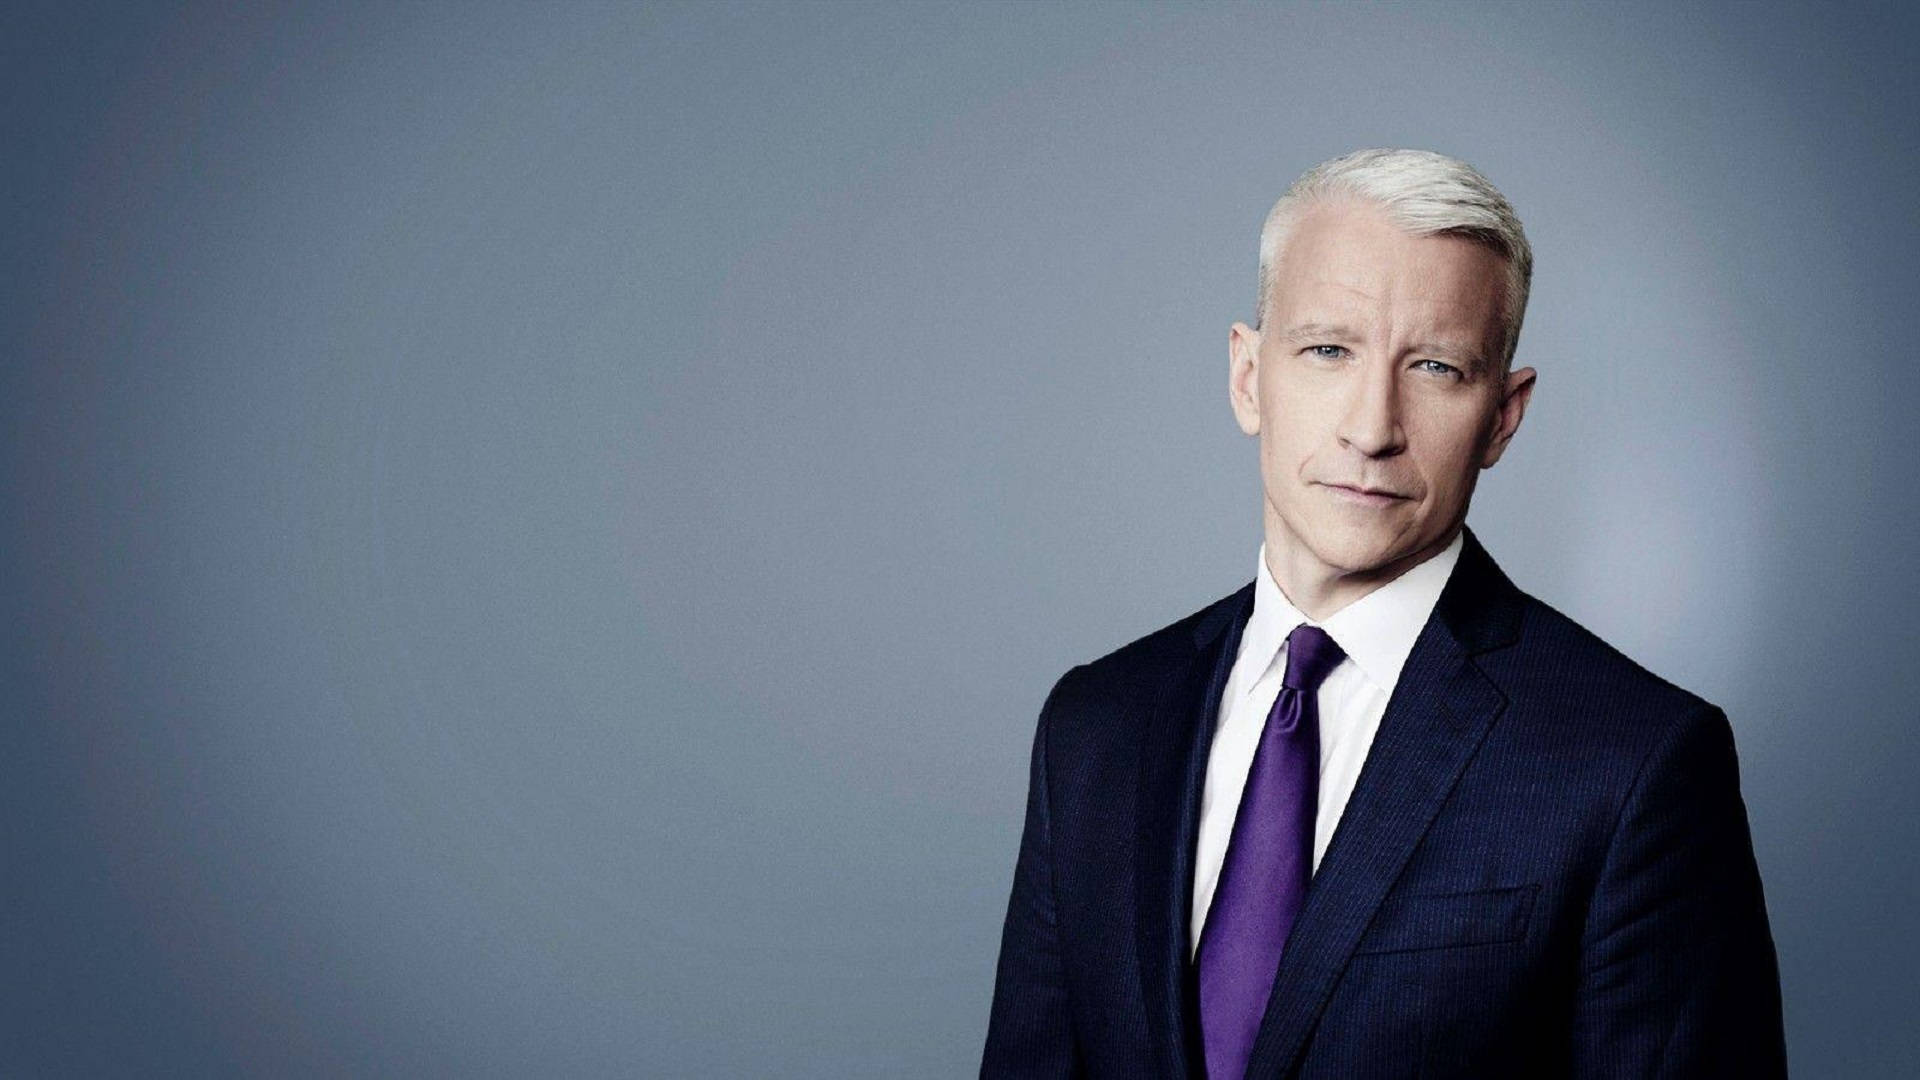 CNN's Anderson Cooper giver dig de seneste nyheder. Wallpaper